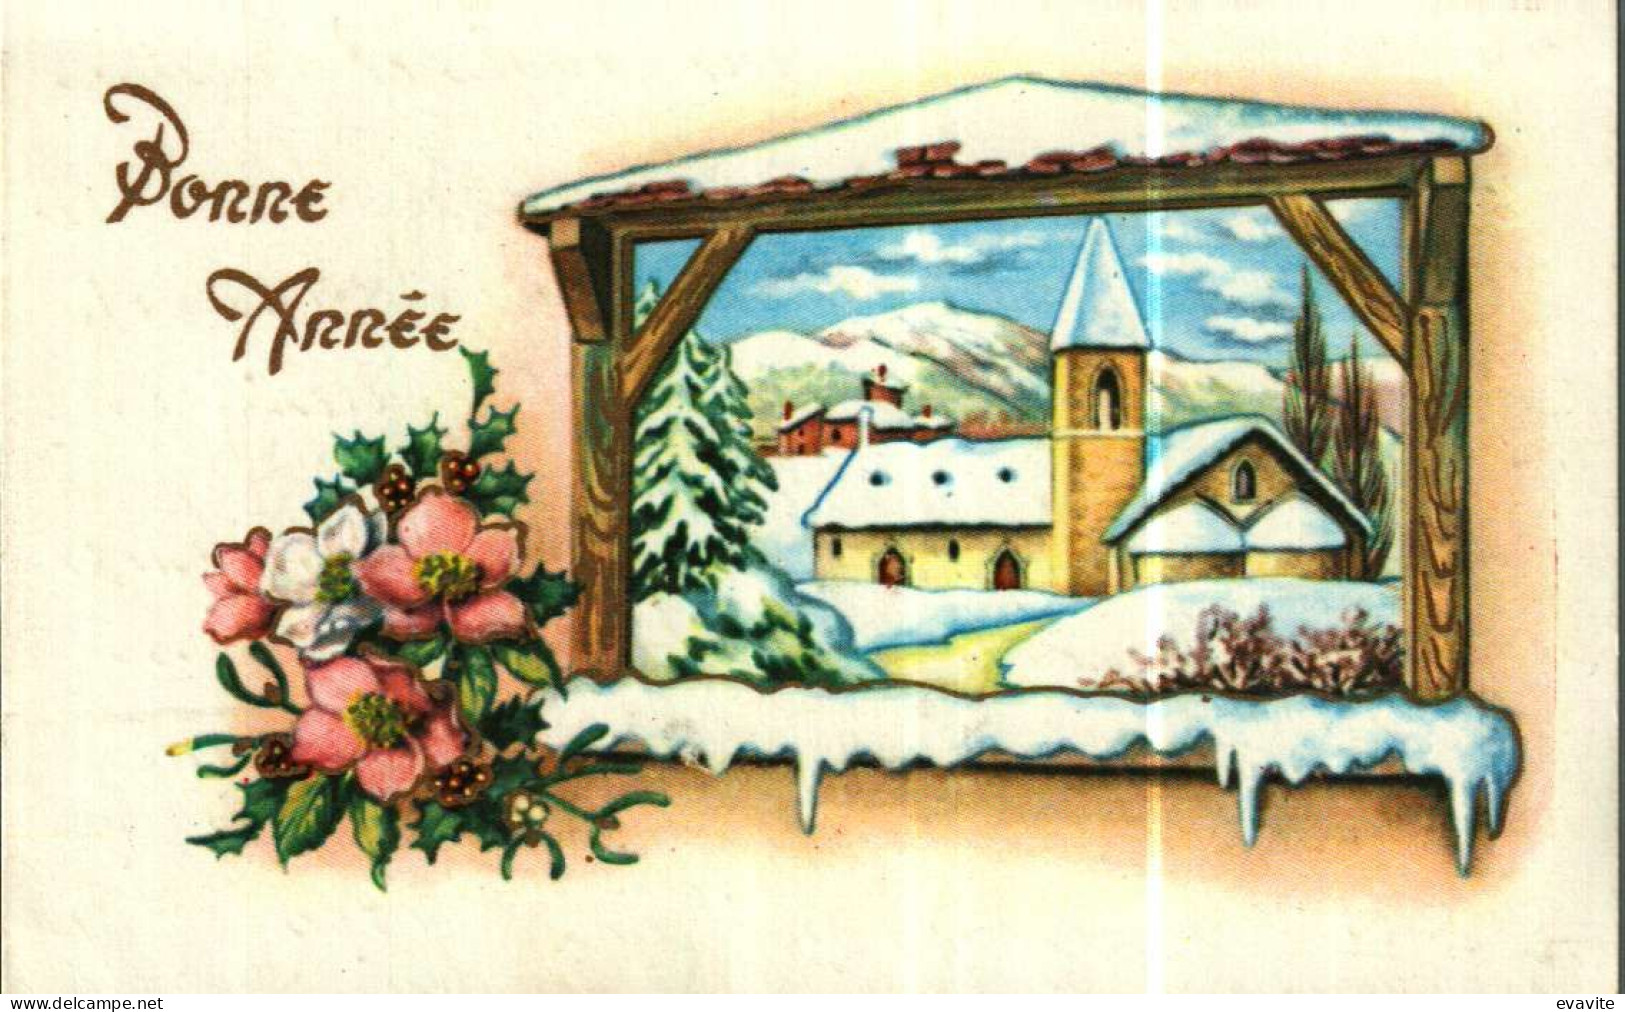 Petite Carte Mignonette     Bonne Année   Village,neige, Fleurs - New Year